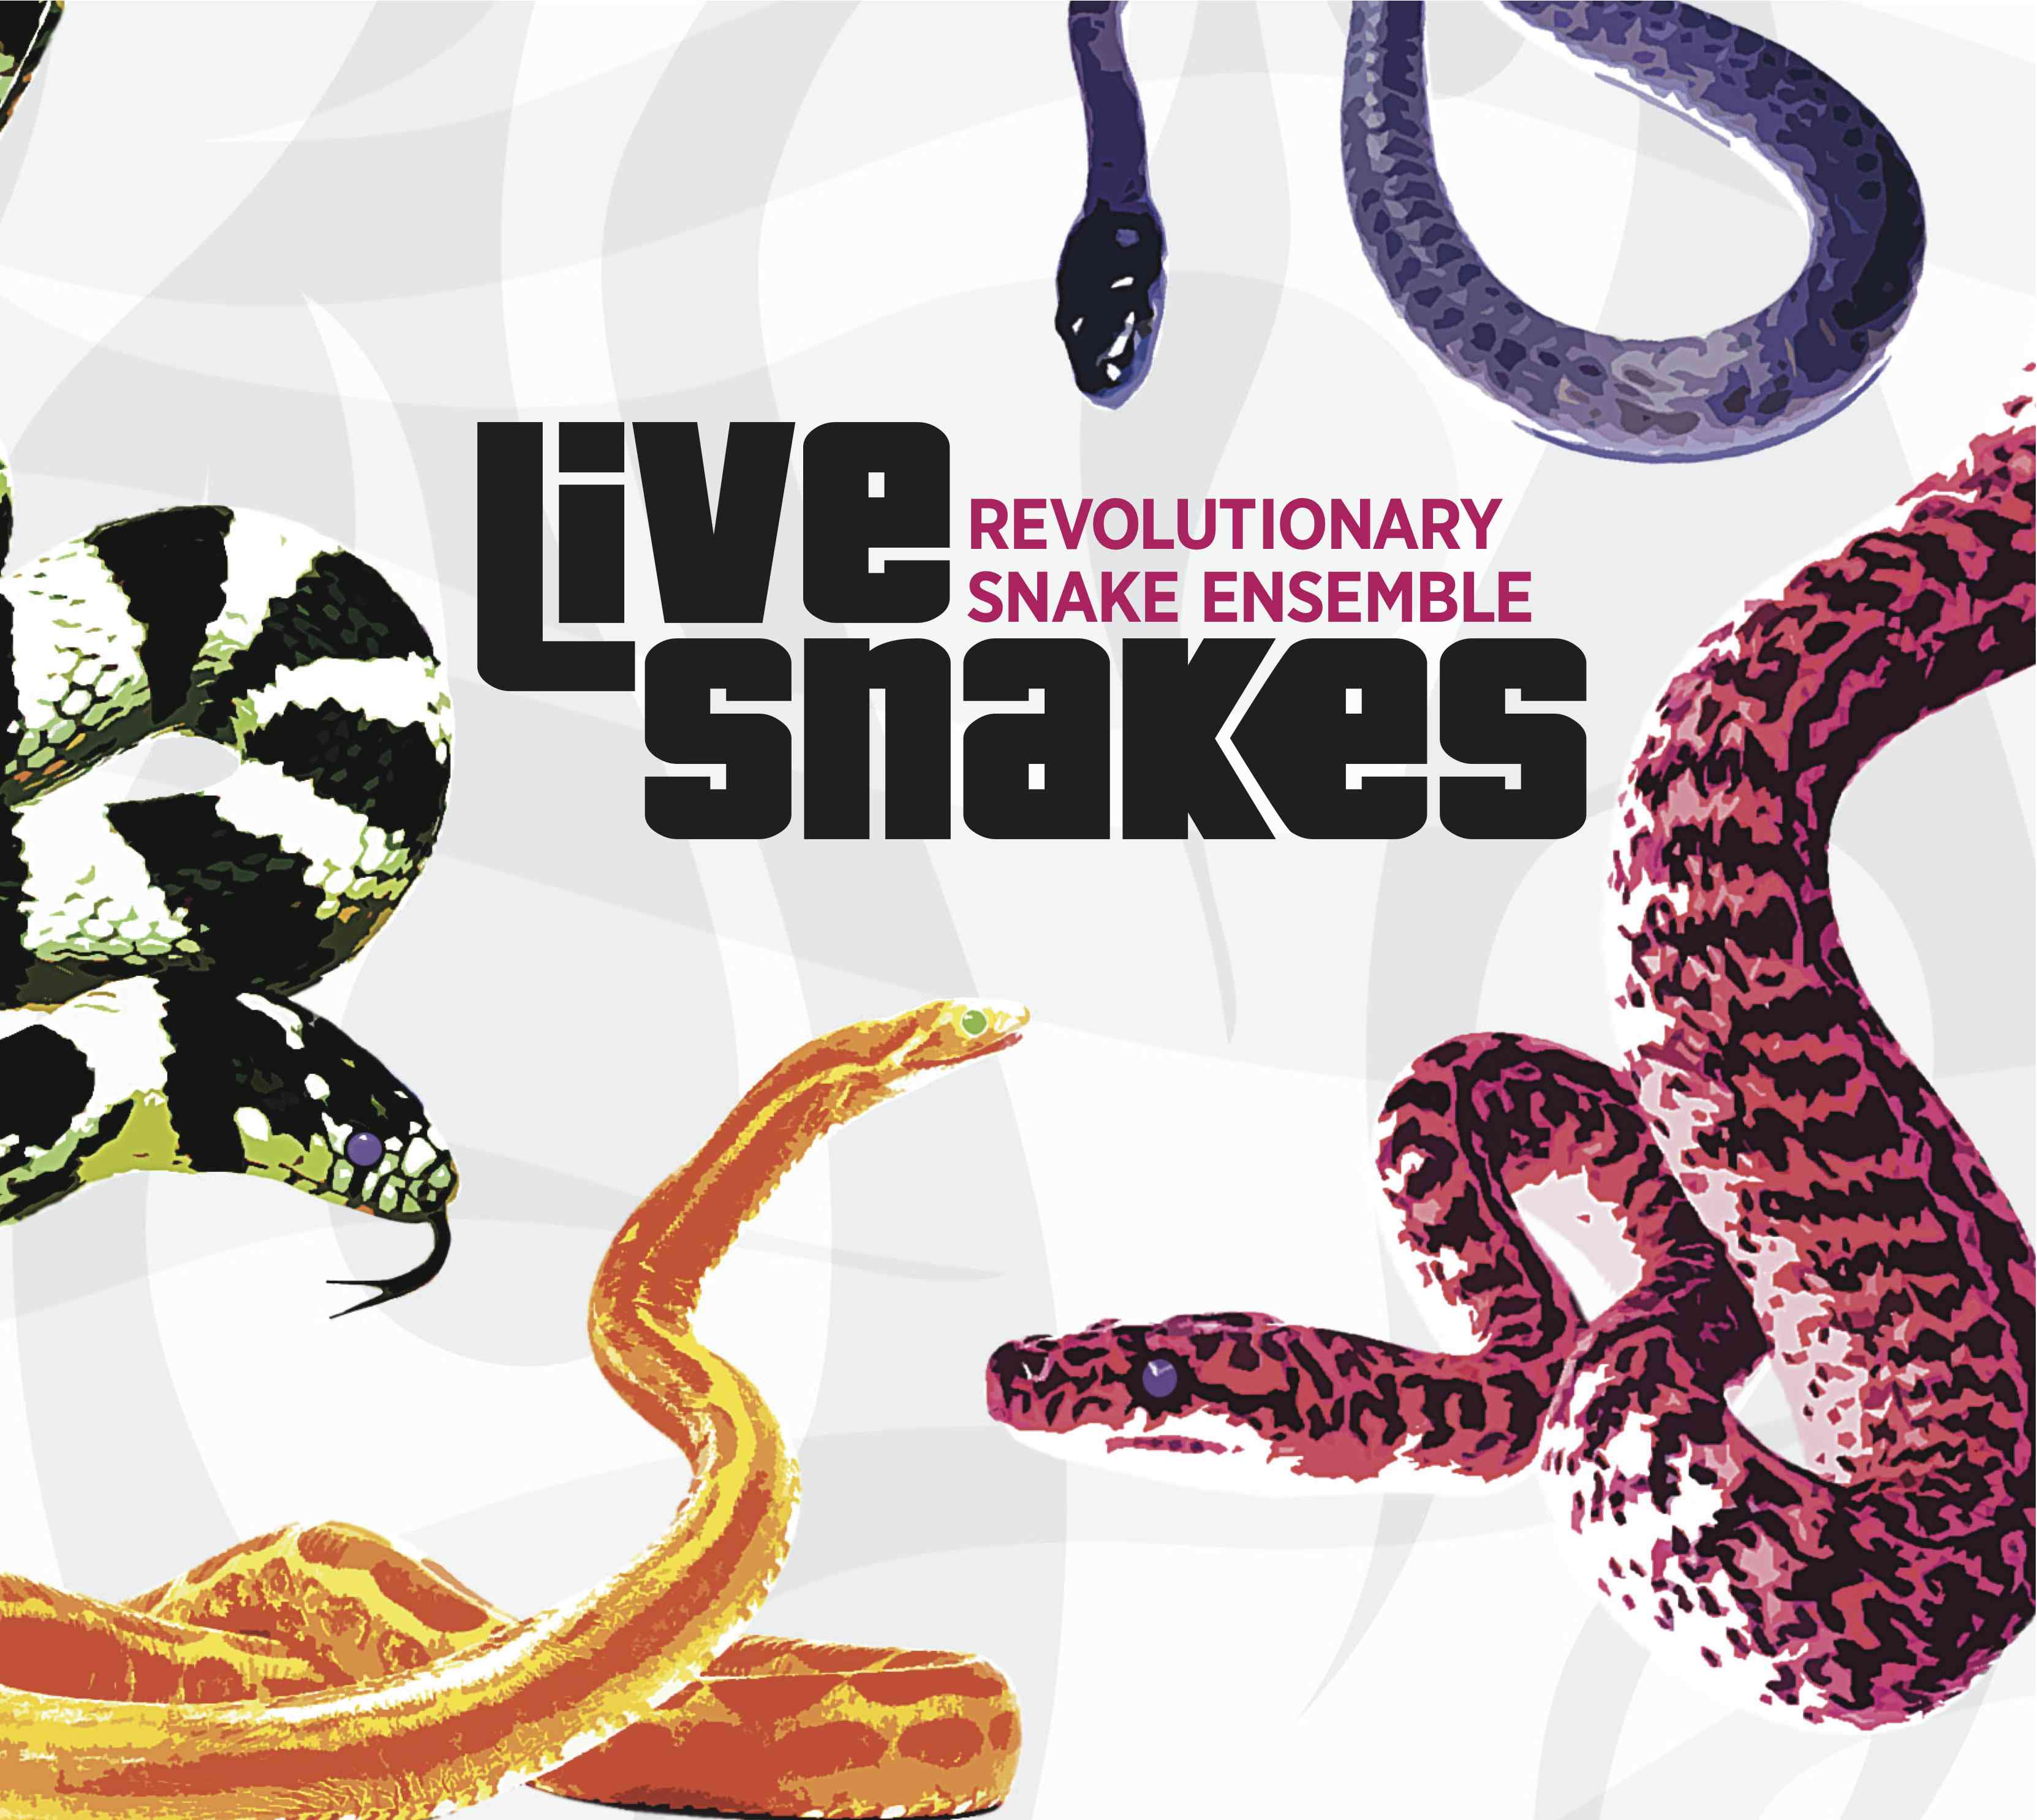 REVOLUTIONARY SNAKE ENSEMBLE - Live Snakes cover 